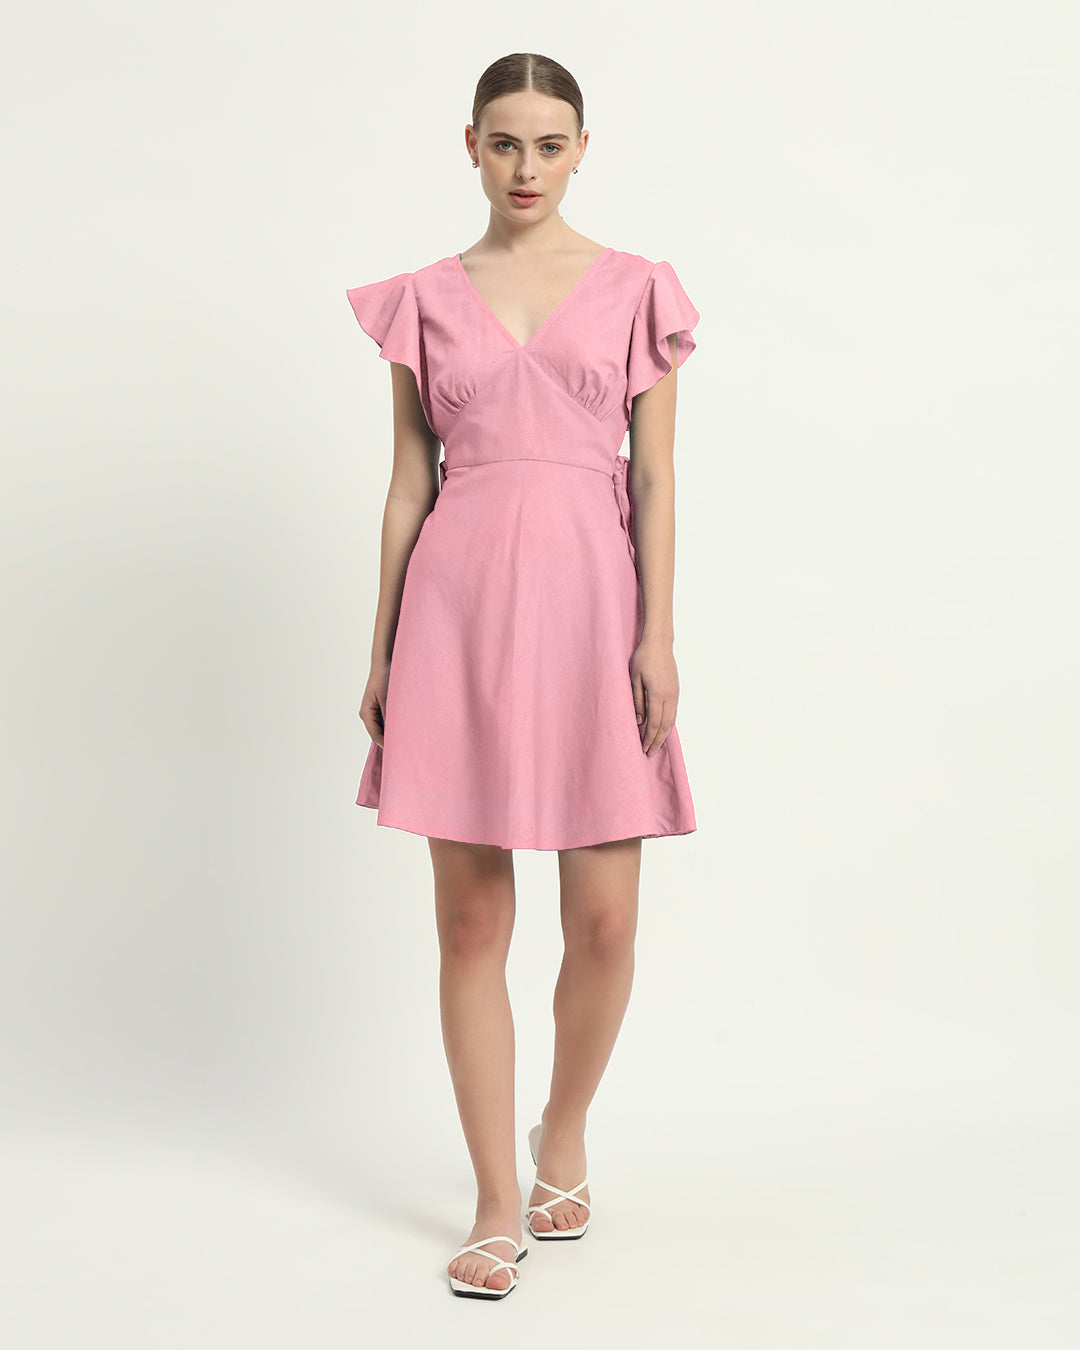 The Fairlie Fondant Pink Cotton Dress